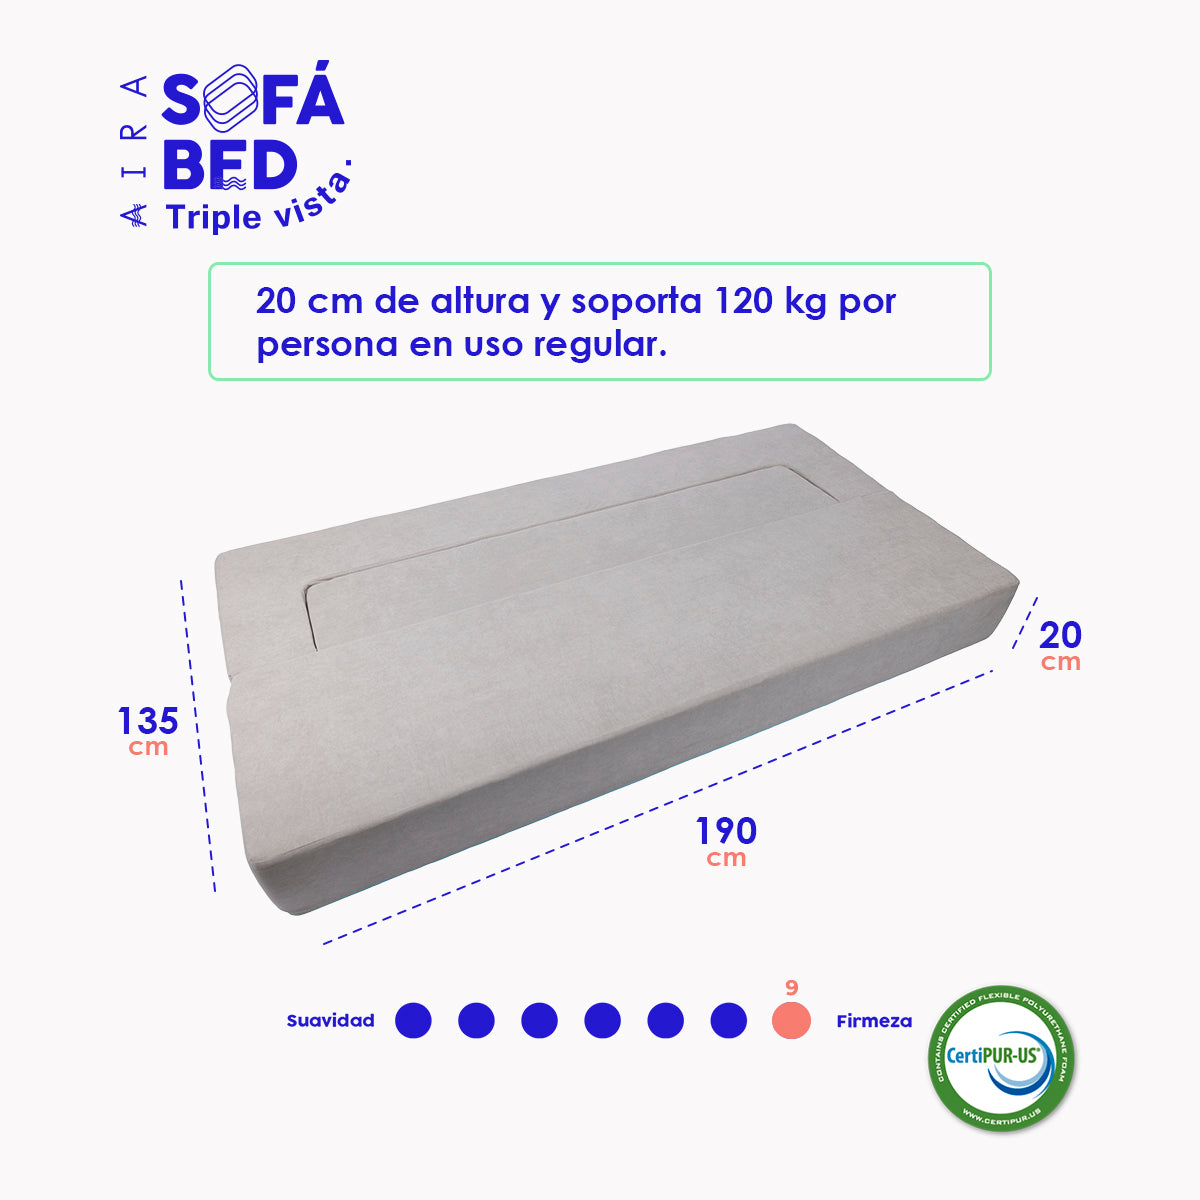 AIRA Sofa Bed colchón sillón 3 EN 1 8" (20cm) - AIRA SLEEP Colchones Memory Foam | Descuentos